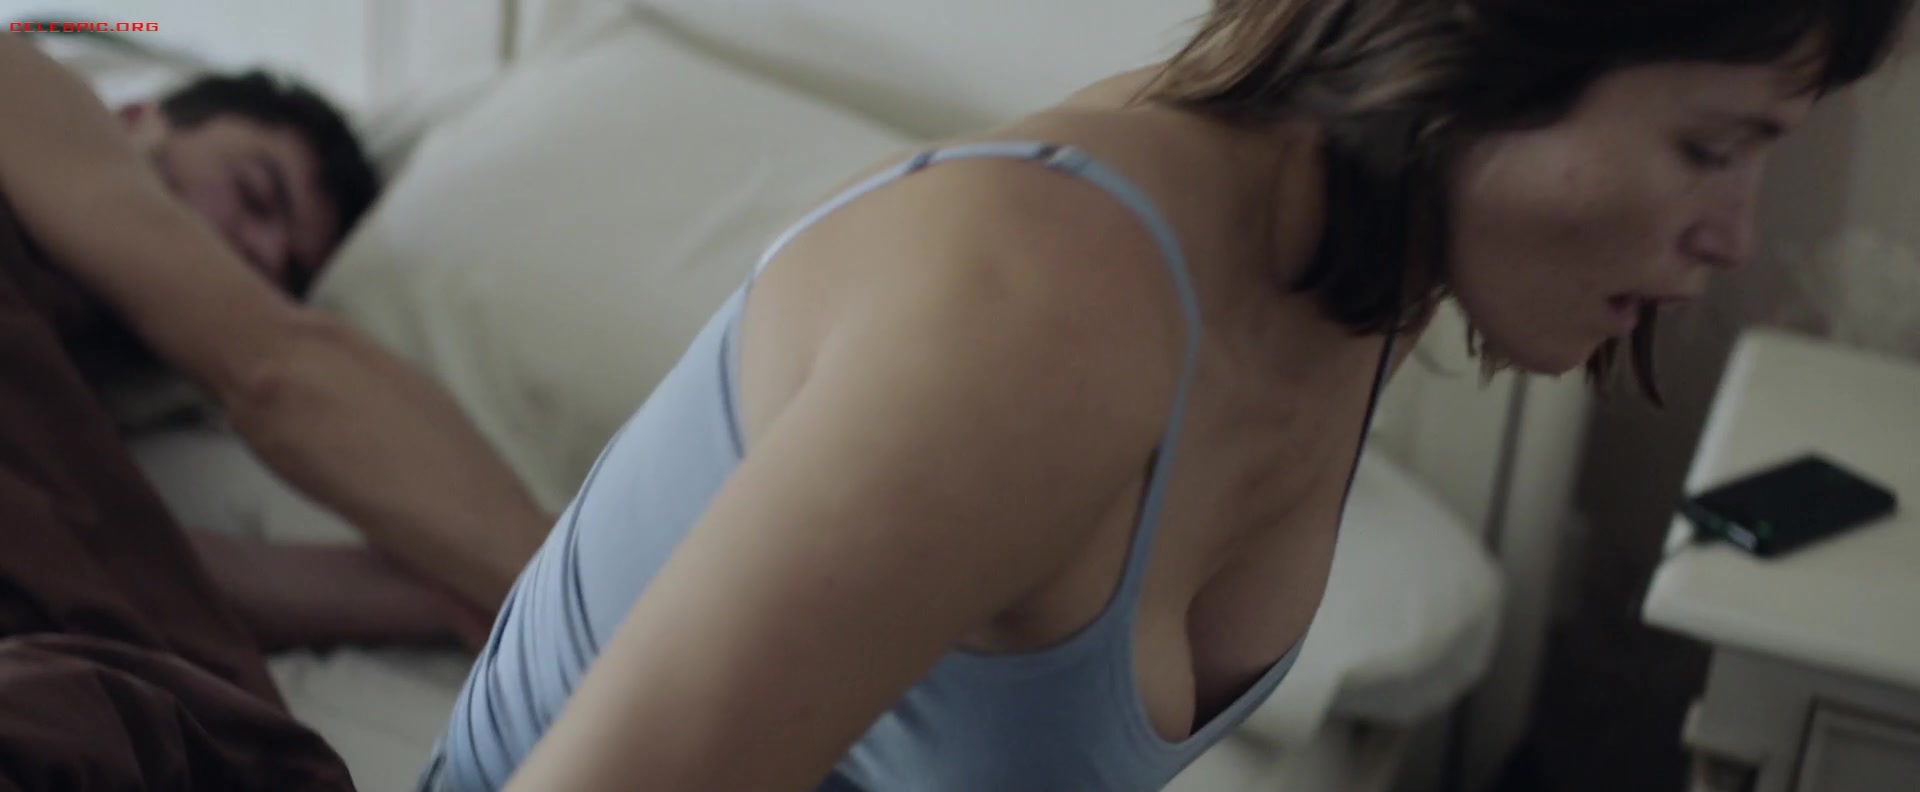 Gemma Arterton - The Escape 1080p (1) 0400.jpg